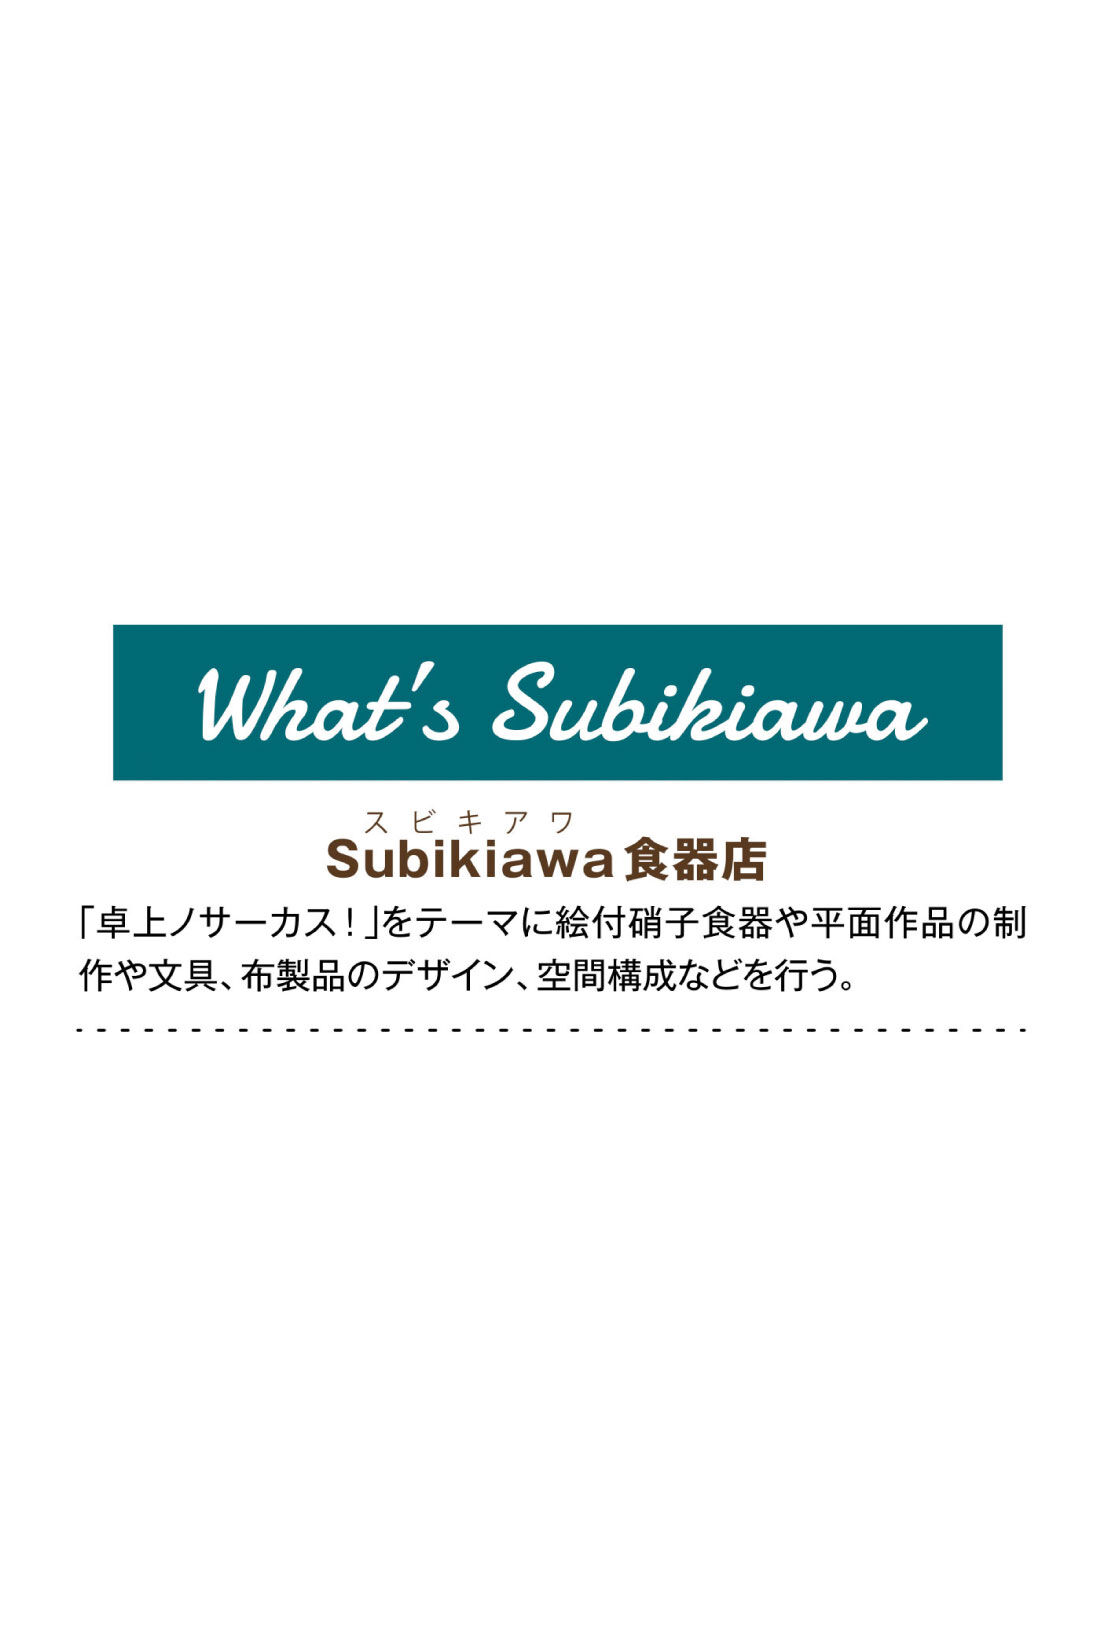 Real Stock|Subikiawa食器店さんとつくった クリームソーダ柄のトートバッグ